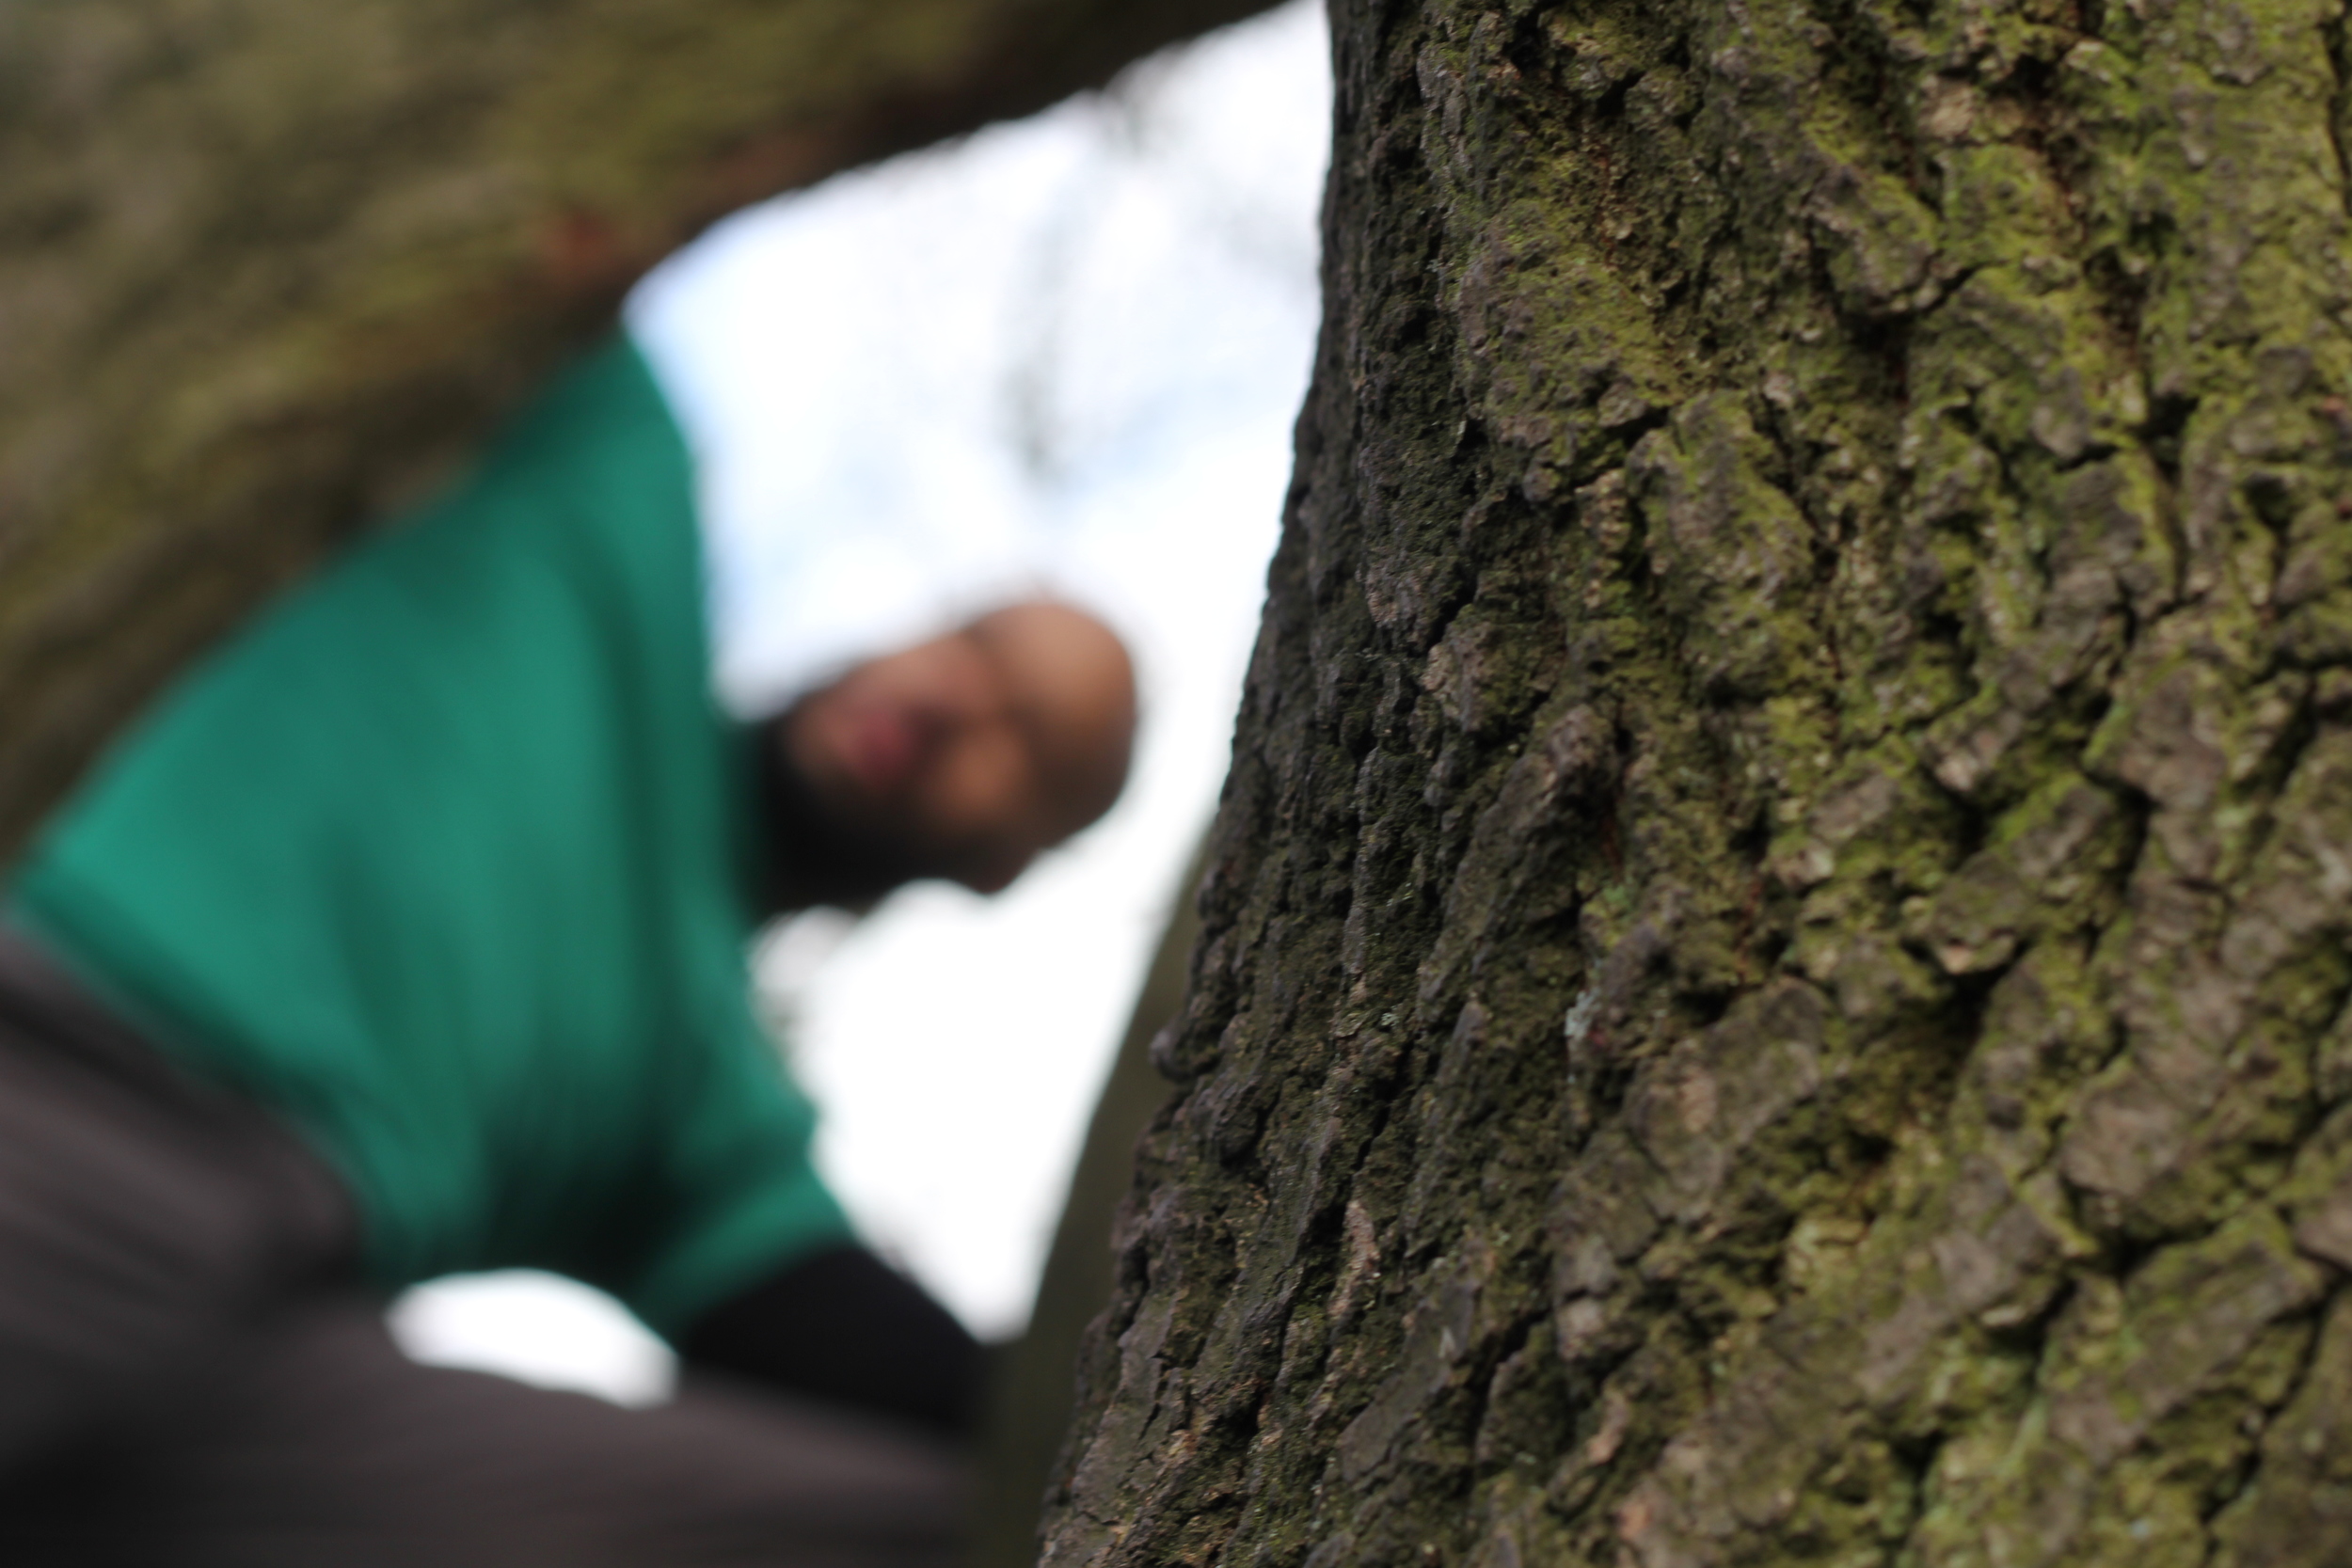 Treeclimbing